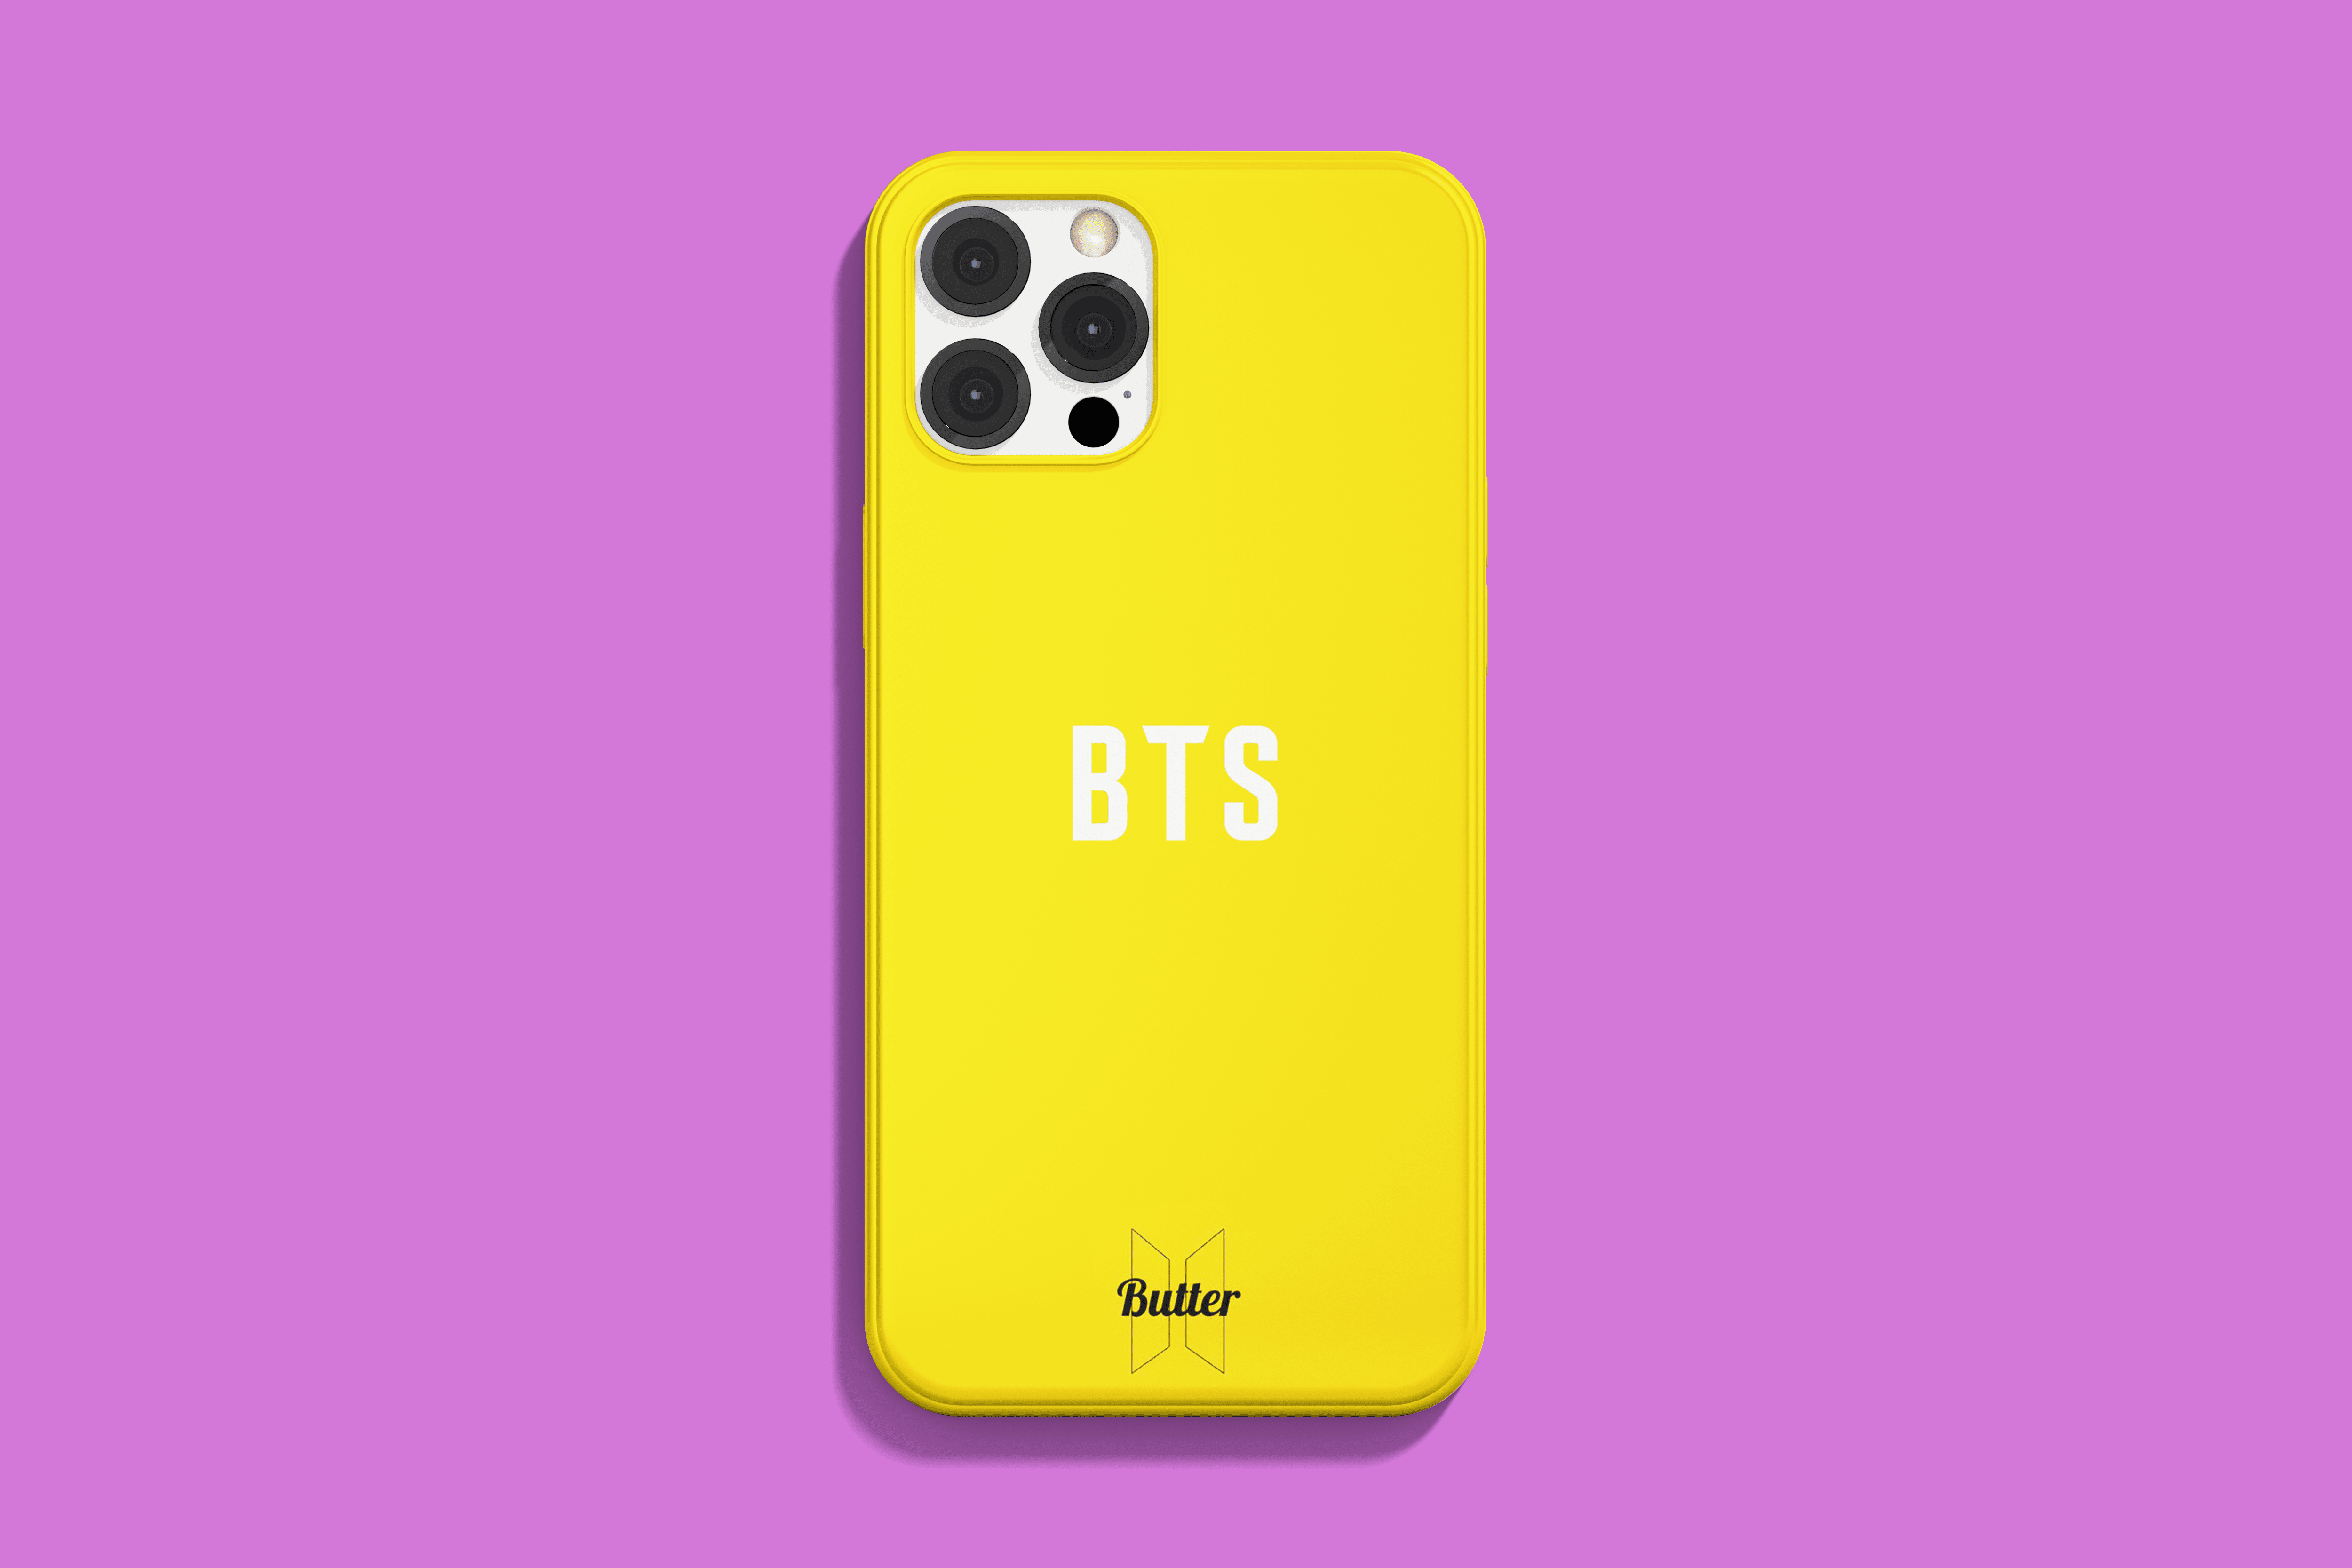 BTS Butter Phone Case